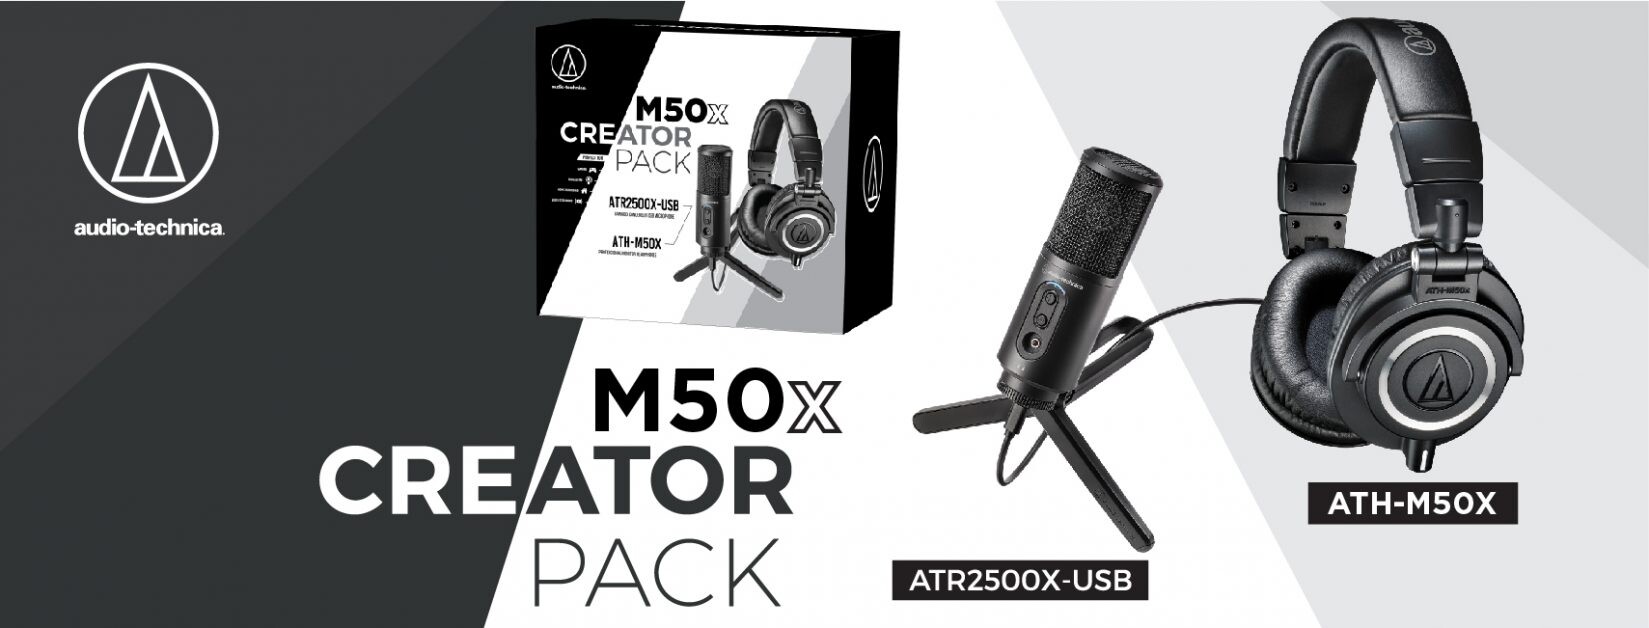 อาร์ทีบีฯ ประเดิมศักราชใหม่เอาใจผู้ผลิตคอนเทนต์ ส่งชุด M50x Creator Pack พร้อมไมโครโฟน ATR2500X-USB จากแบรนด์ Audio-Technica ในราคาสุดคุ้ม